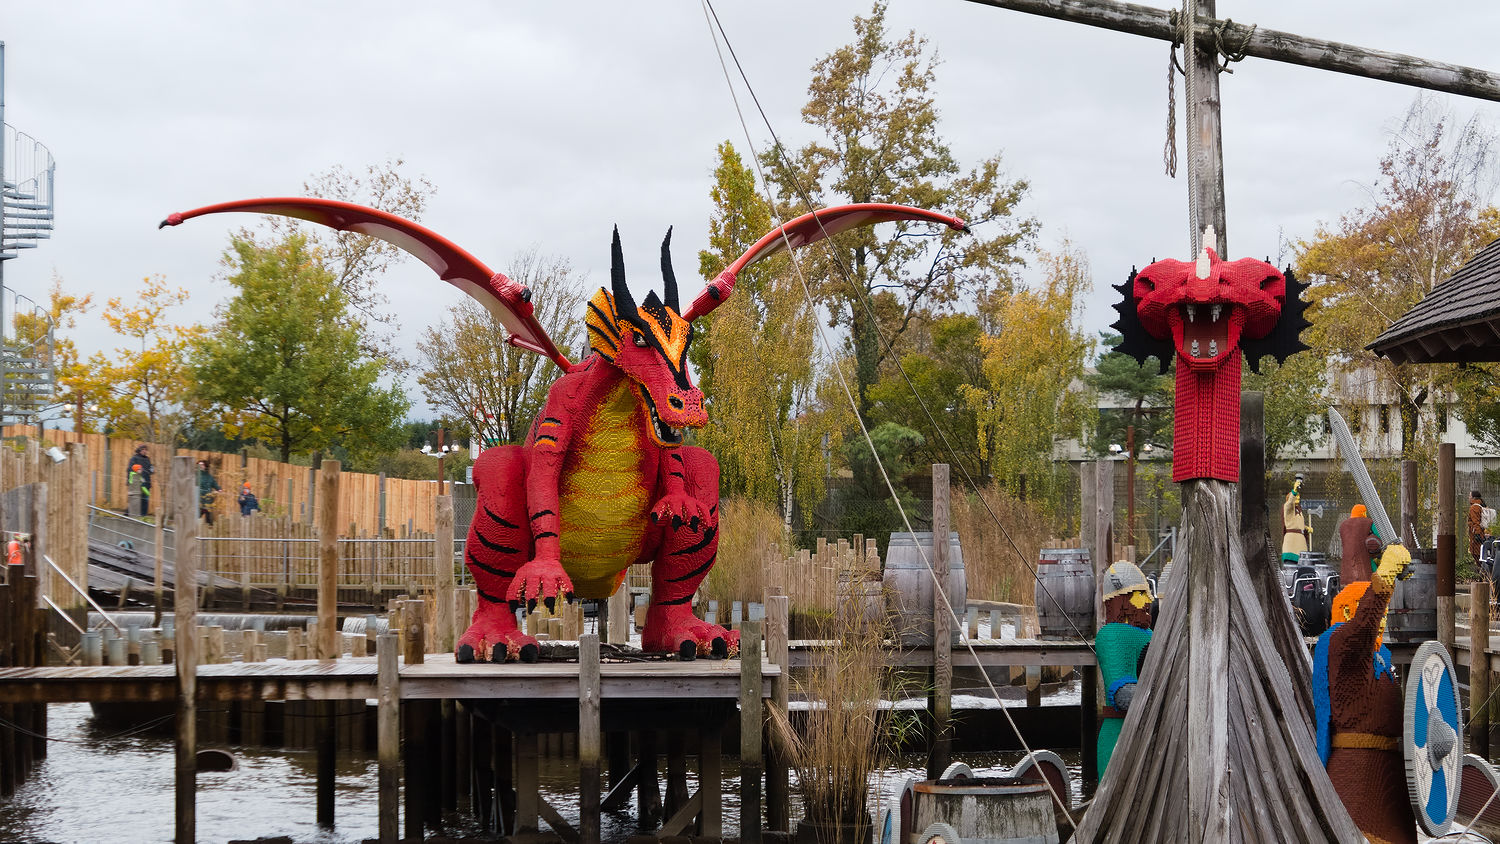 LEGO Built dragon sculputres at a water ride at LEGOLAND